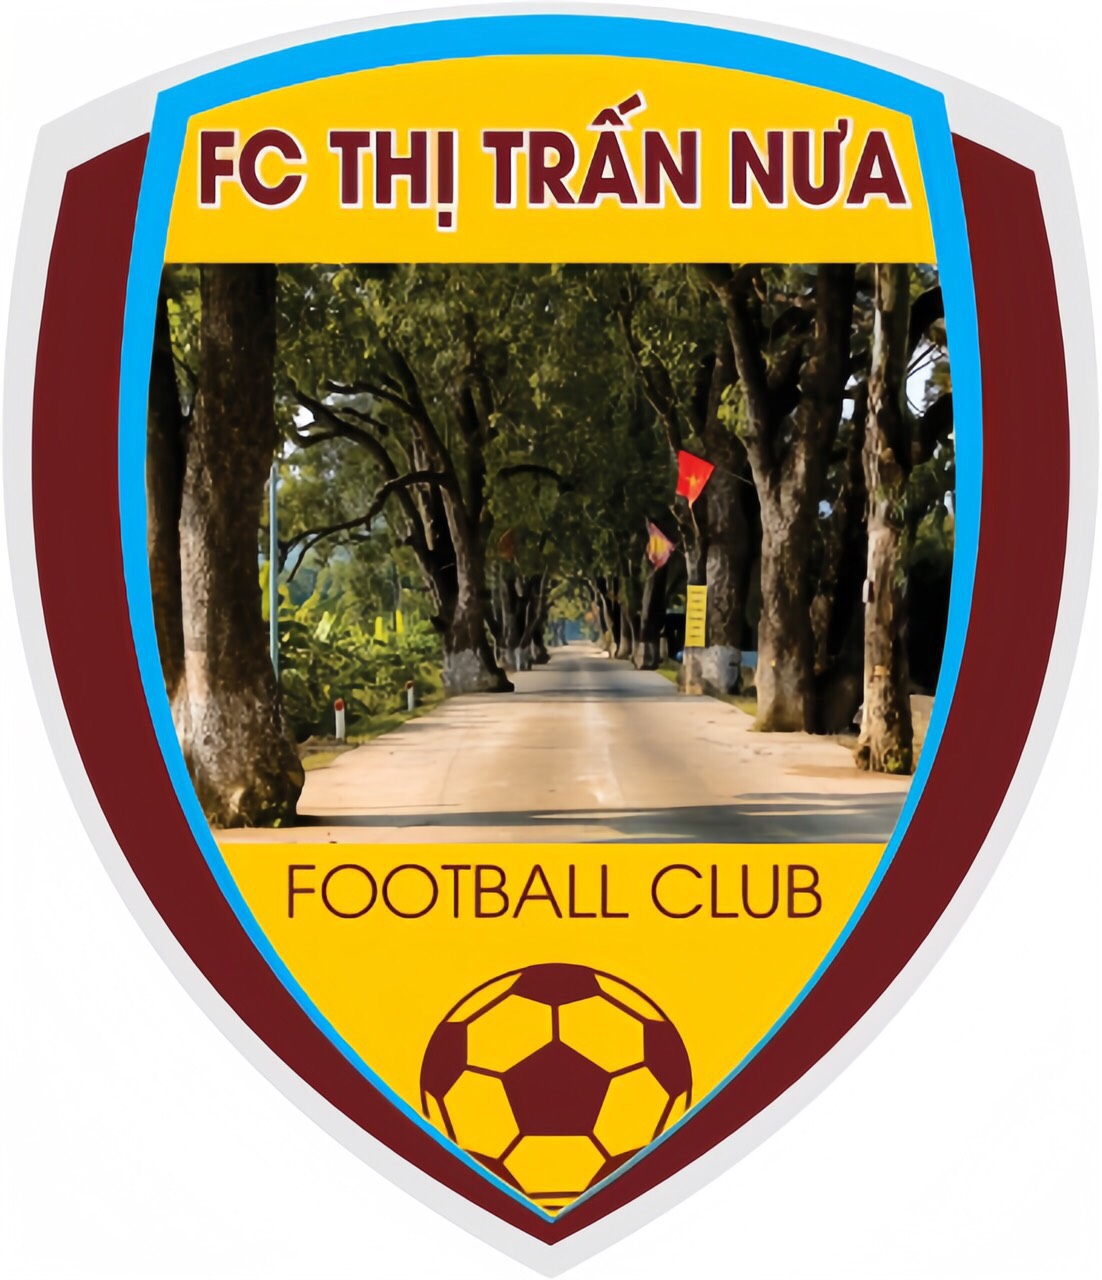 FC Thị Trấn Nưa